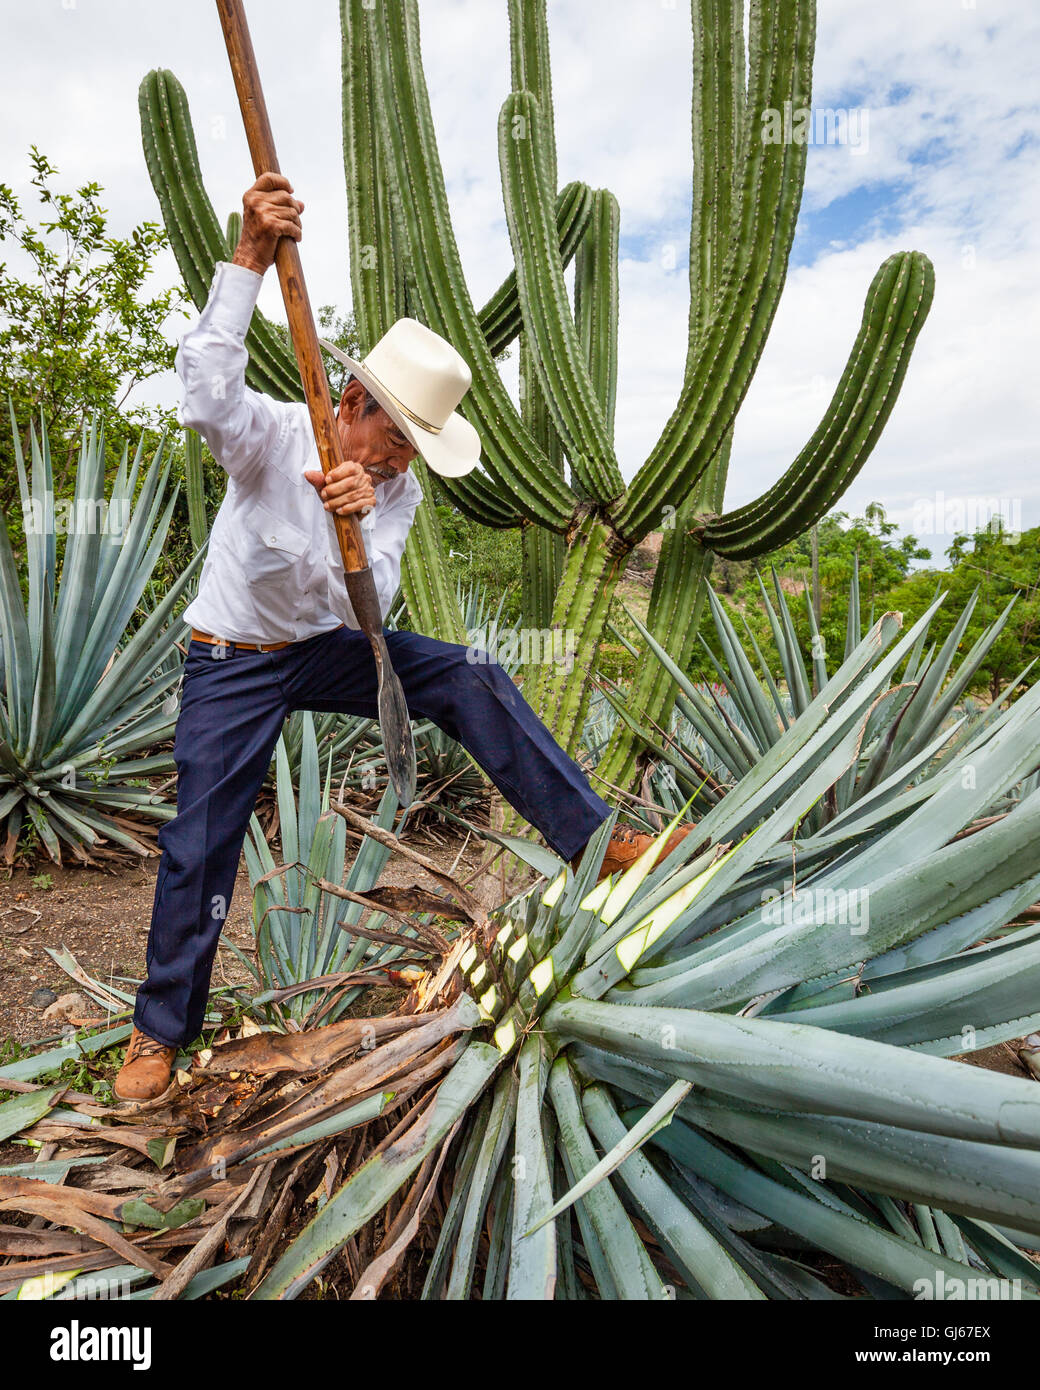 Don Quirino, un jimador, cosechas la "piña" del agave azul en la hacienda La Cofradia en Tequila, Jalisco, México. Foto de stock